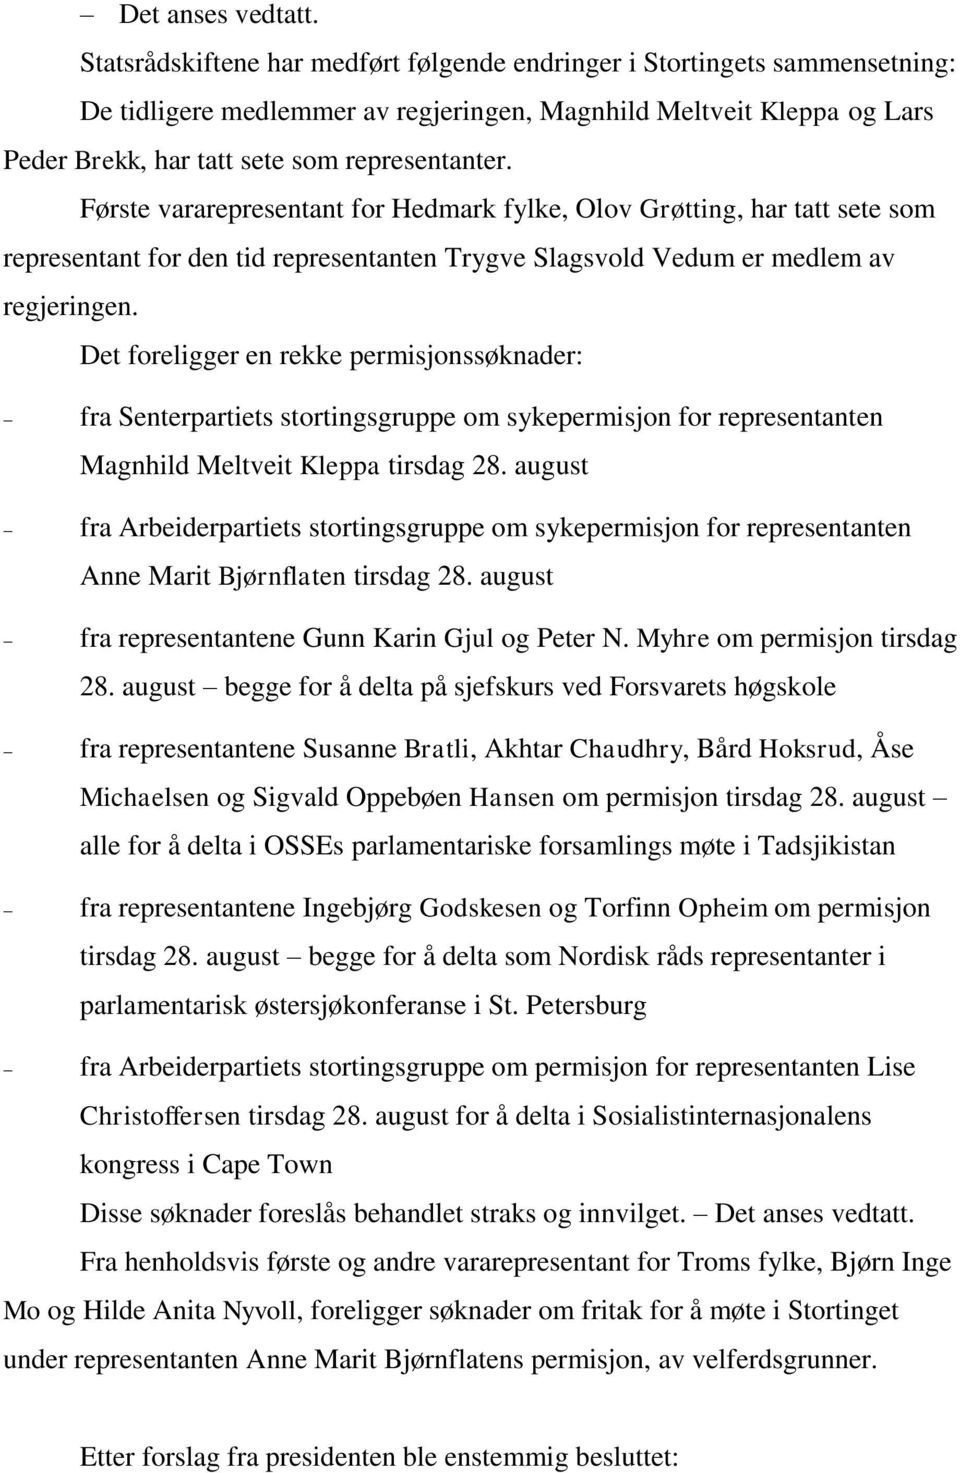 Første vararepresentant for Hedmark fylke, Olov Grøtting, har tatt sete som representant for den tid representanten Trygve Slagsvold Vedum er medlem av regjeringen.